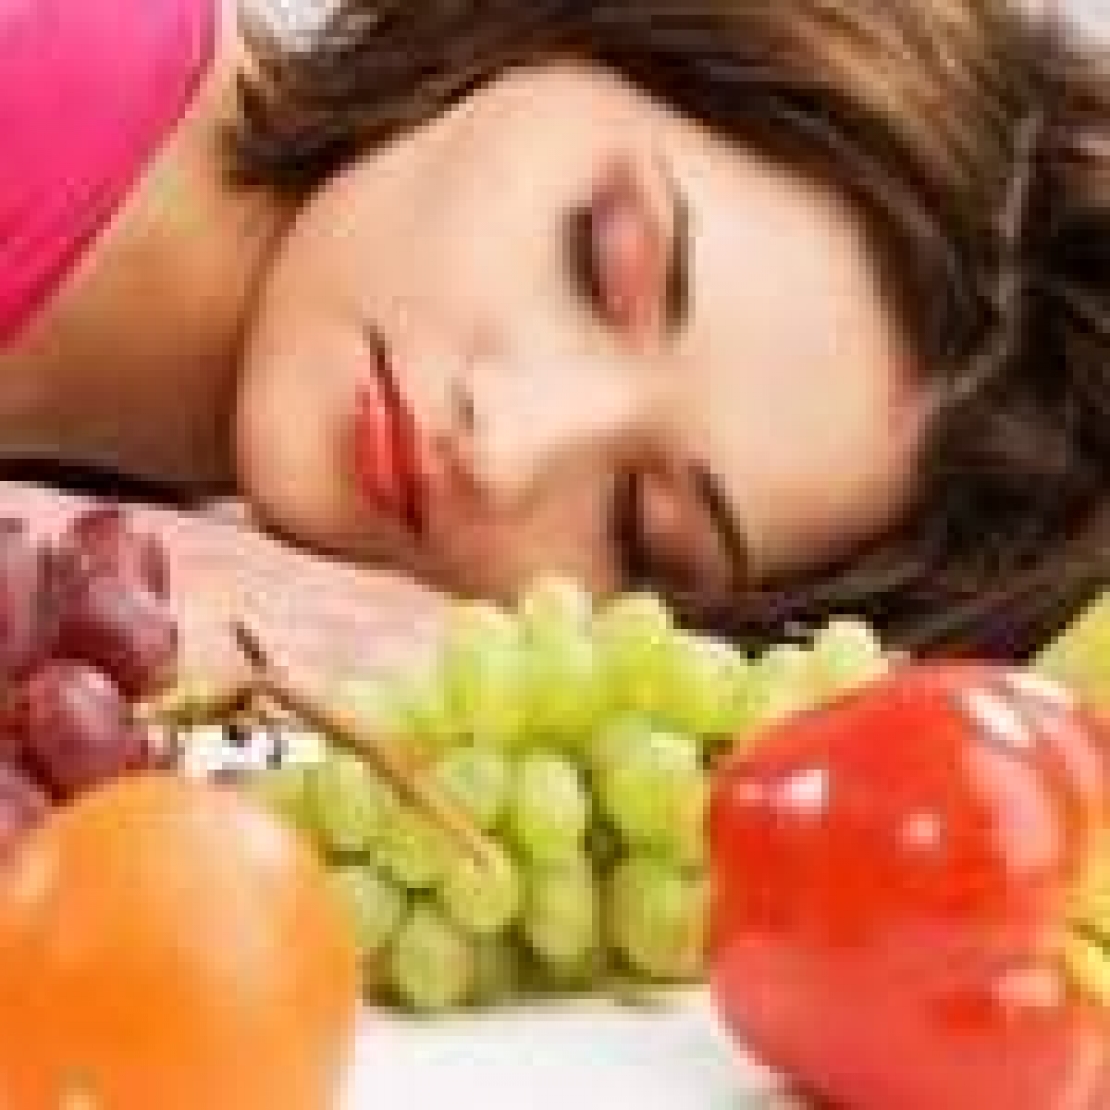 Le abitudini alimentari possono influenzare il sonno